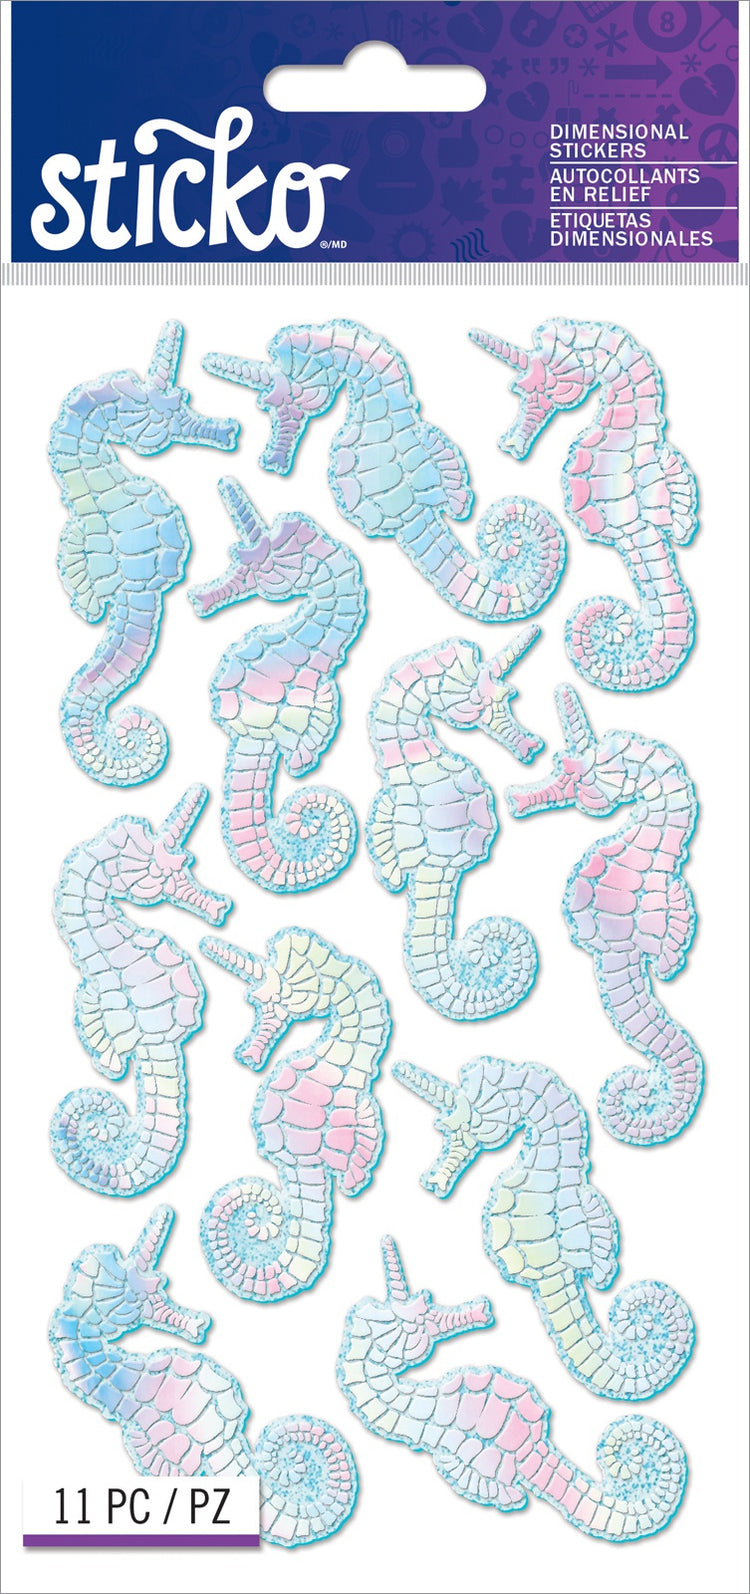 Sticko Iridescent Seacorns Dimensional Stickers